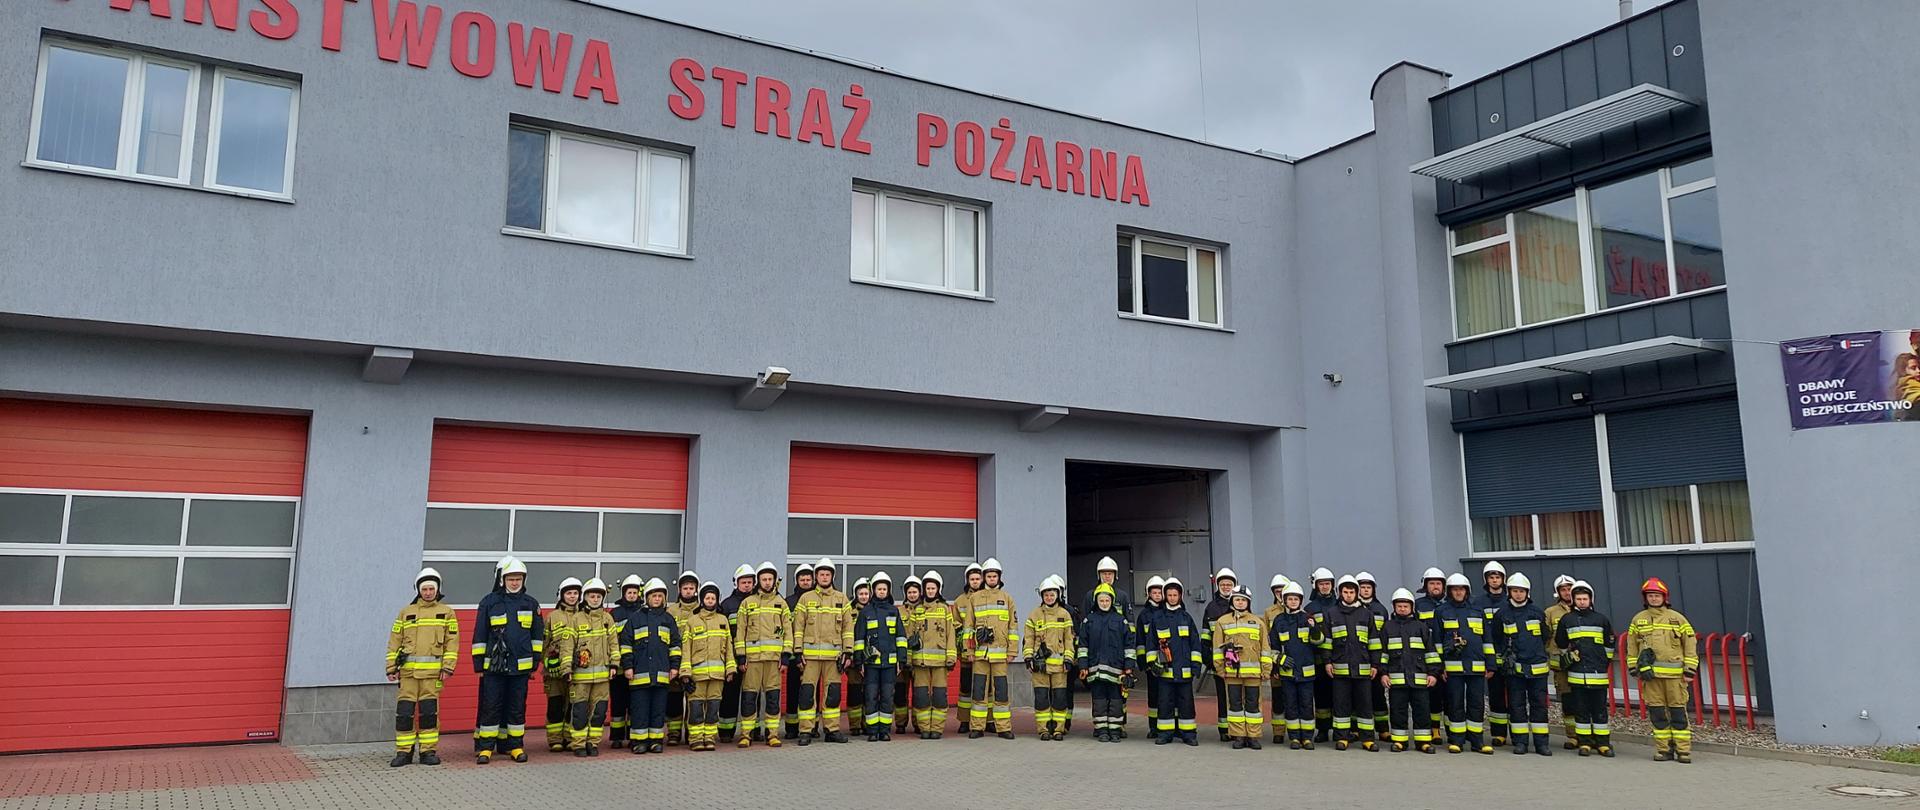 Na zdjęciu widać grupę czterdziestu strażaków, stojących na placu przed Komendą Miejską PSP w Koninie, podczas zbiórki poprzedzającej egzamin szkolenia podstawowego strażaka ratownika Ochotniczych Straży Pożarnych. 